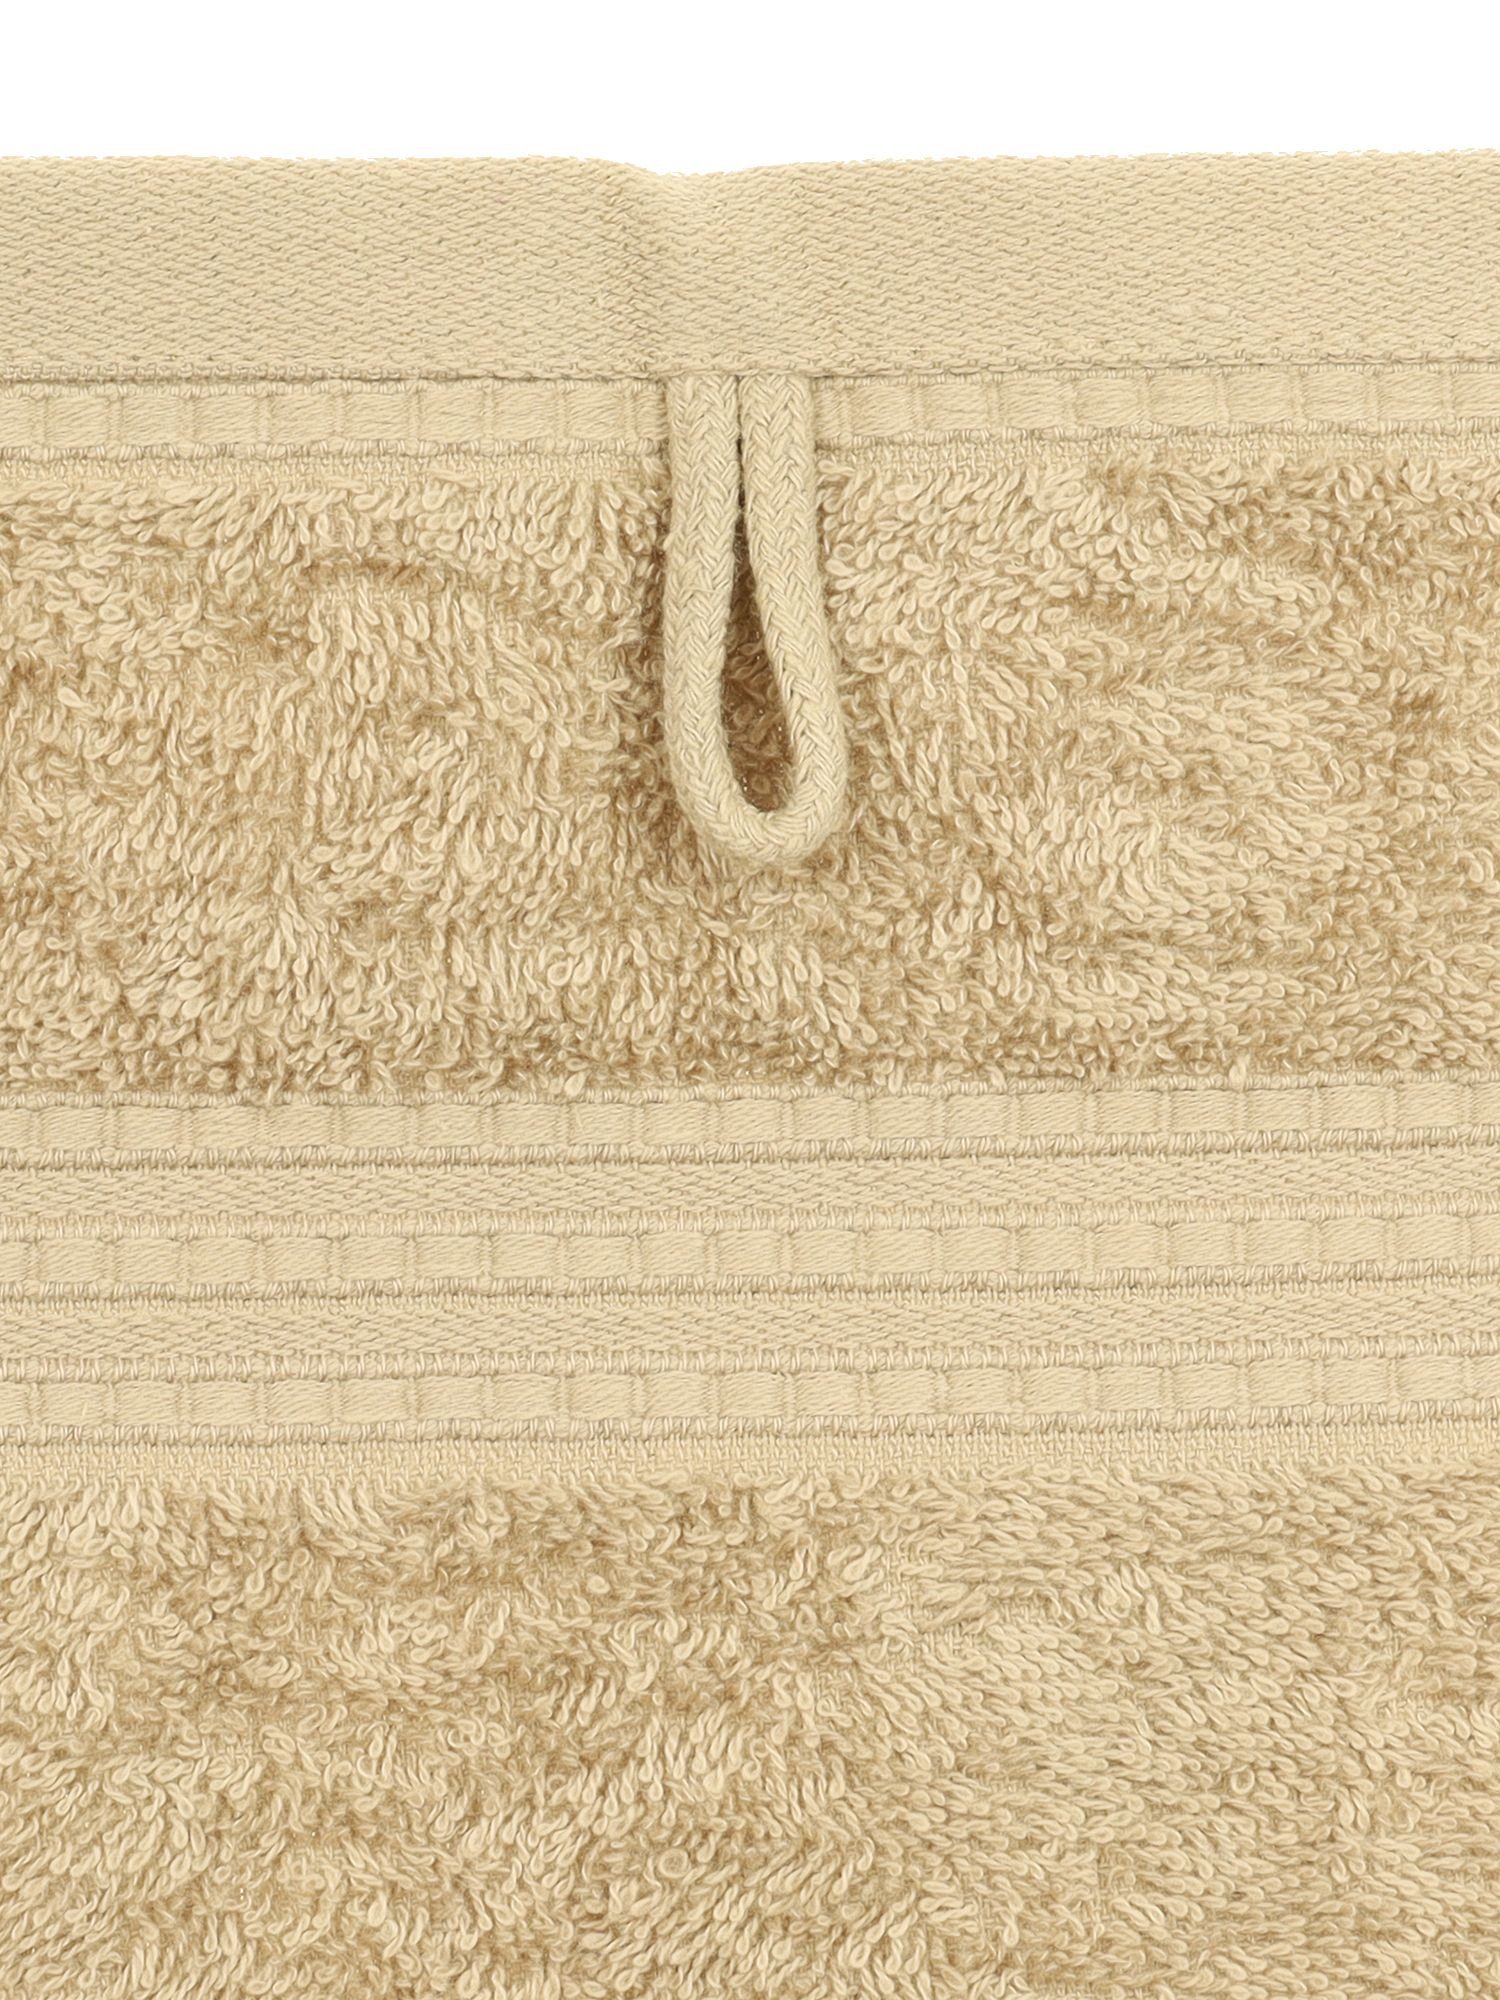 Julsen Julie cm, x 1-Handtuch-Sand-Handtuch Handtuch (1-St) 50 Bio-Baumwolle 100